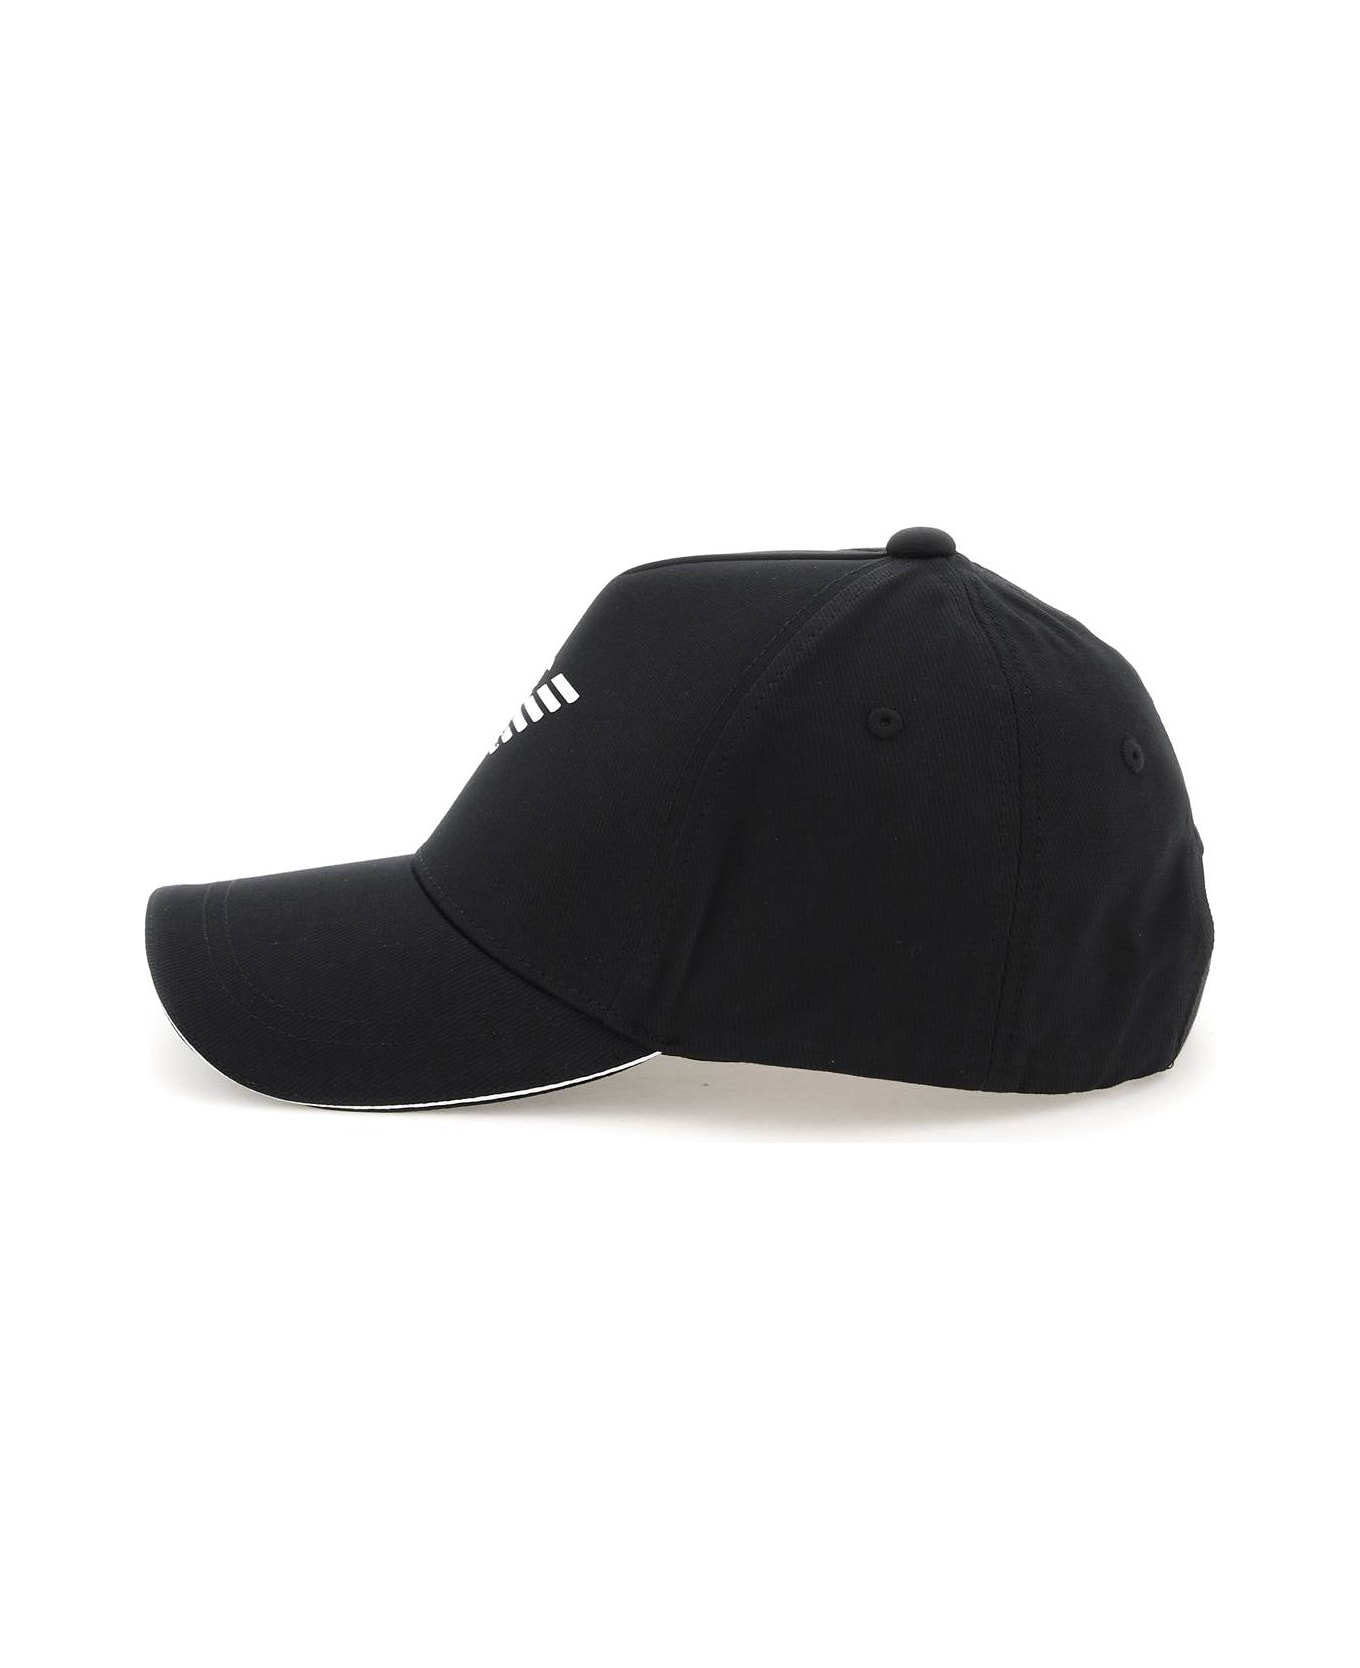 Emporio Armani Baseball Cap With Logo - Black